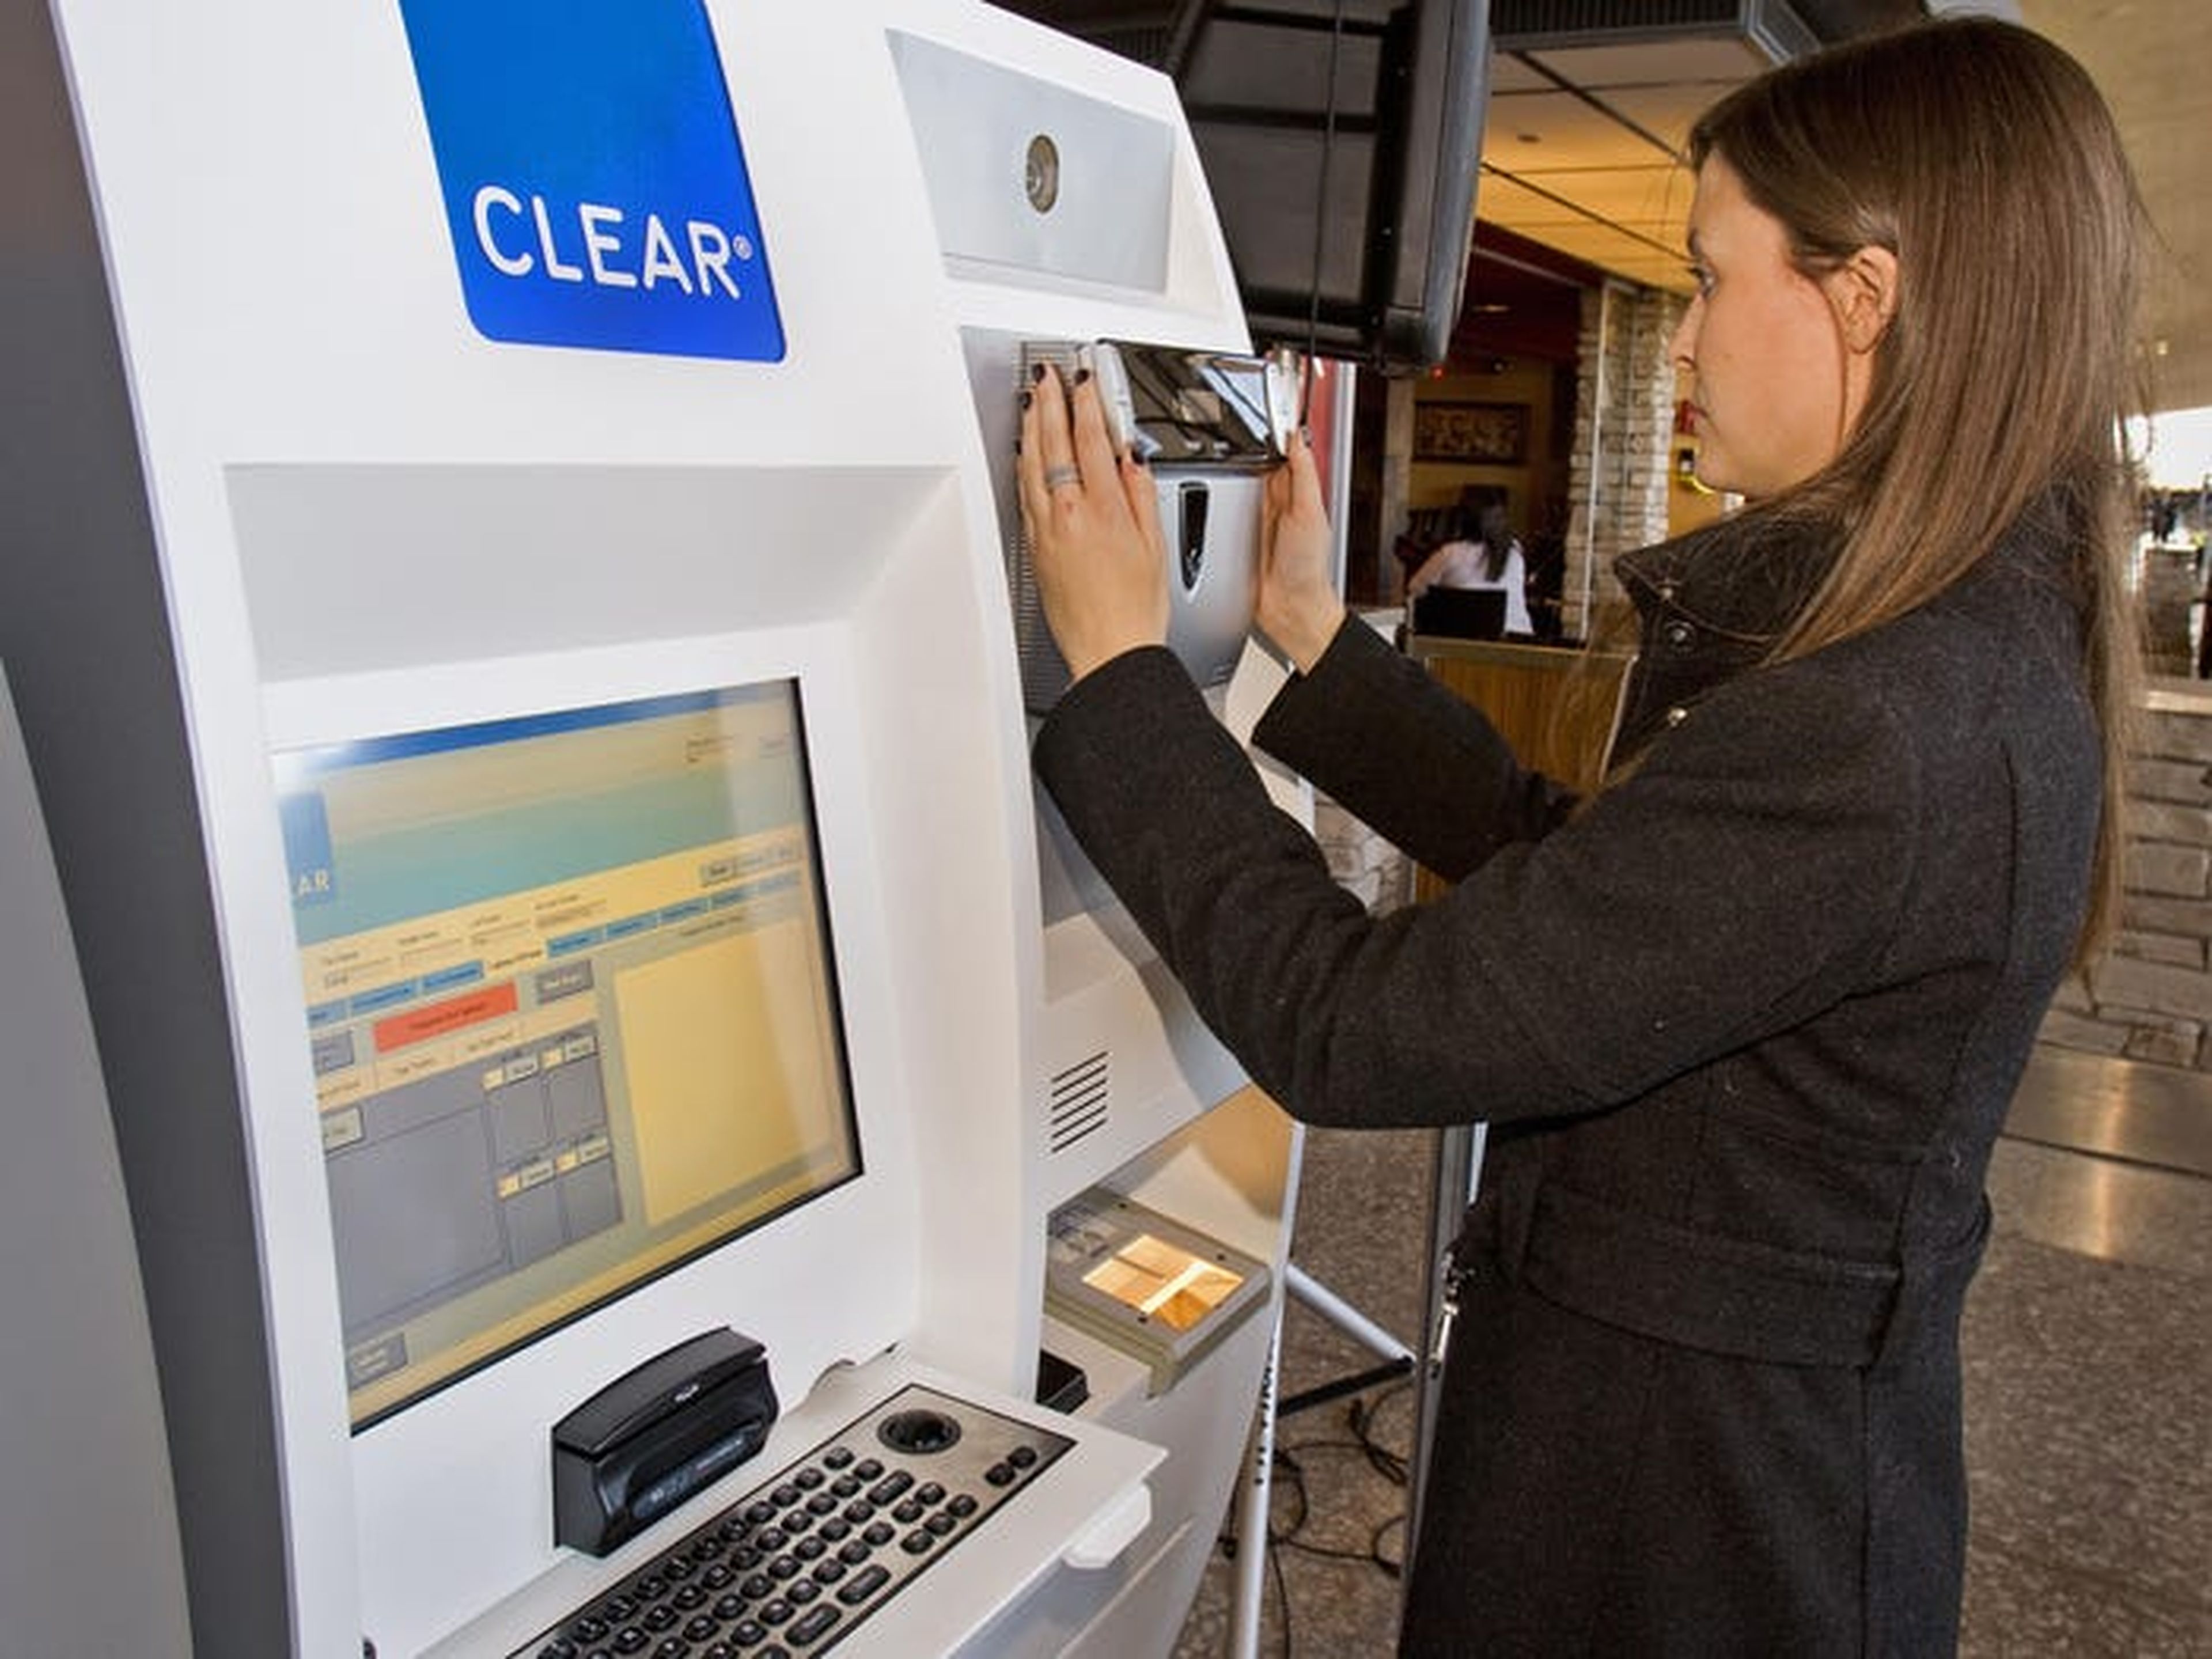 Demostración de cómo funciona una máquina Clear en un aeropuerto.